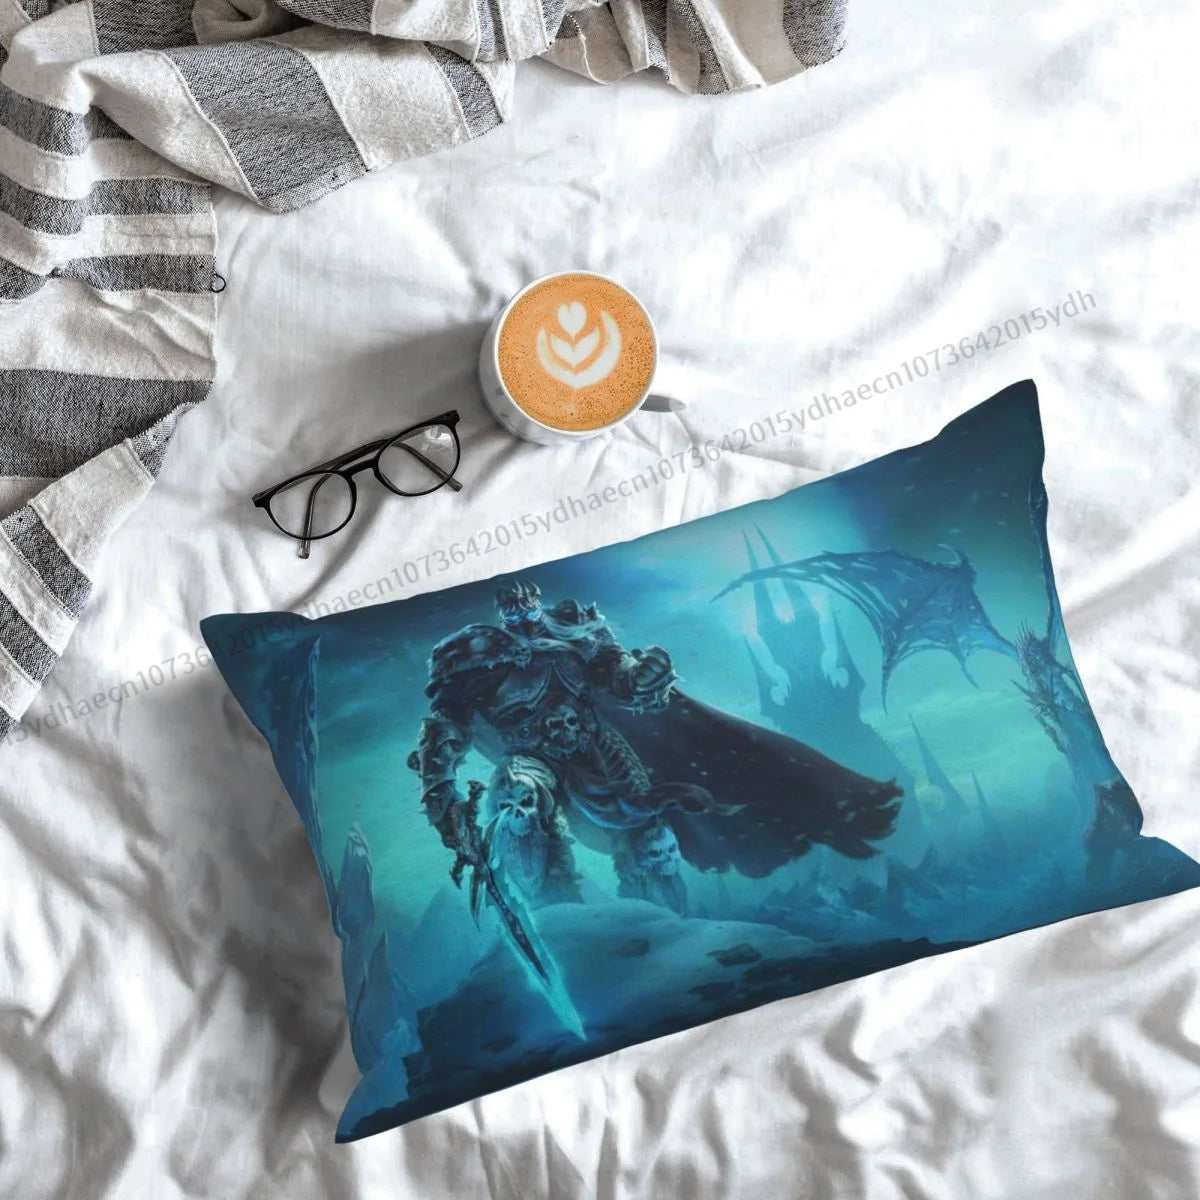 Lich-King – taie d'oreiller imprimée World Of Warcraft, housse de coussin pour sac à dos, décoration de canapé douce